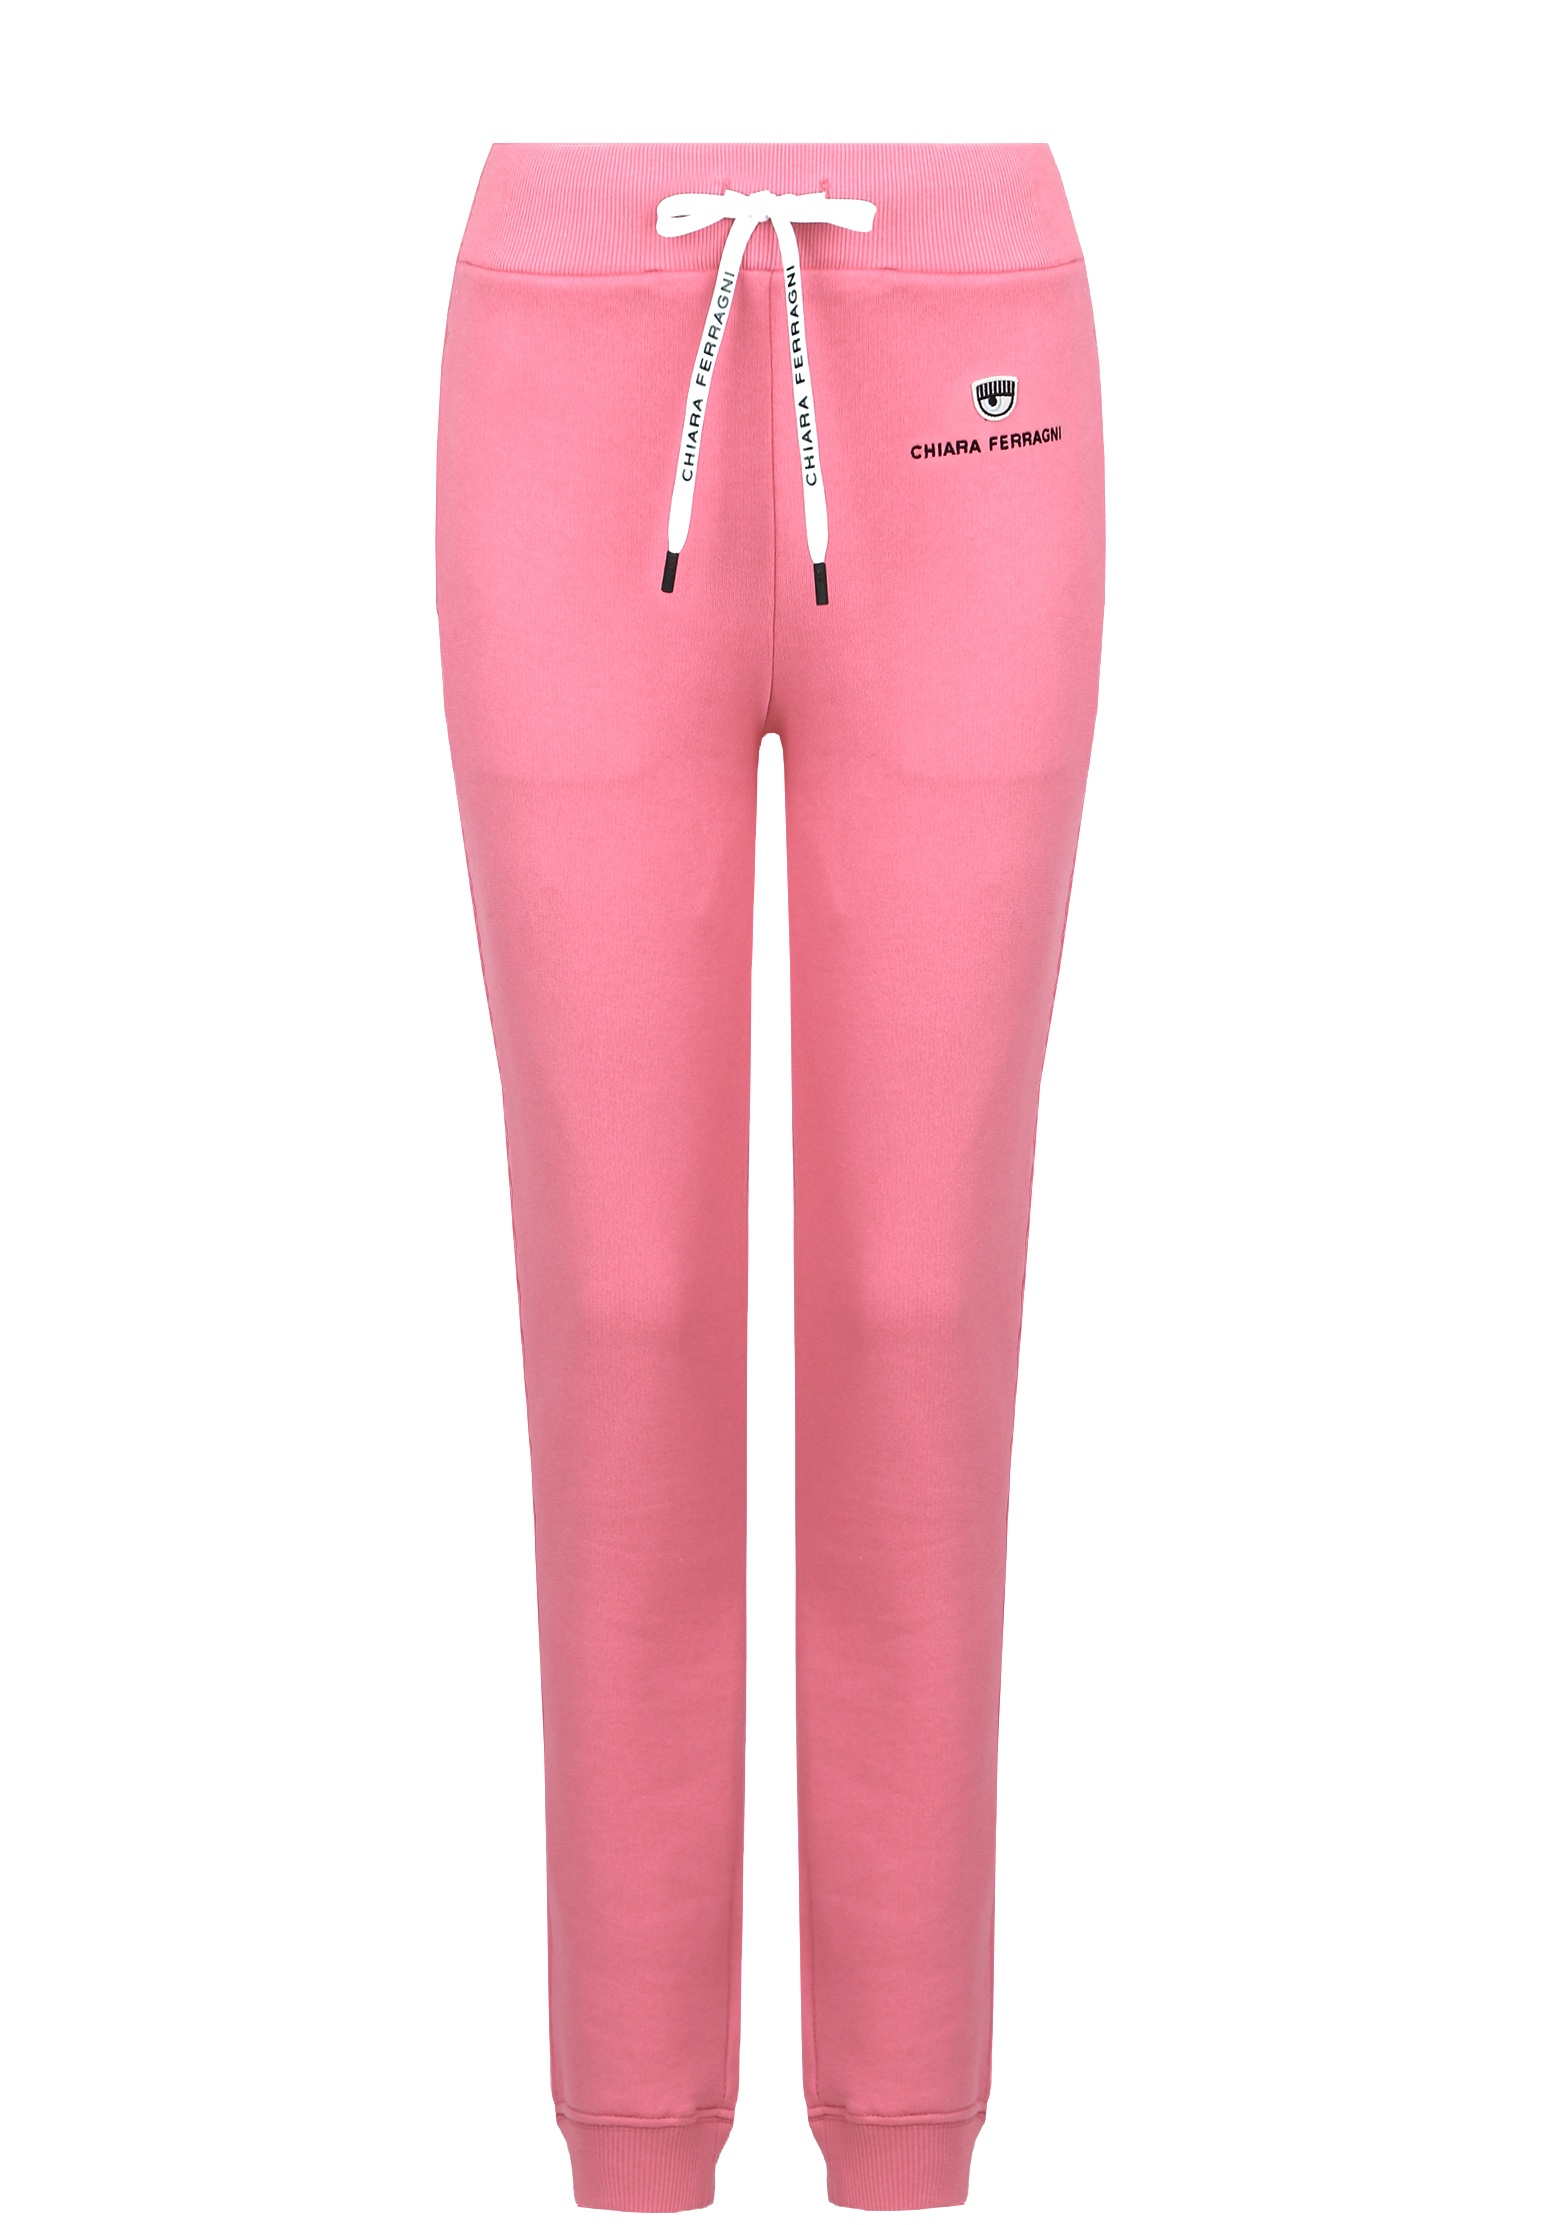 Спортивные брюки женские CHIARA FERRAGNI 138100 розовые S